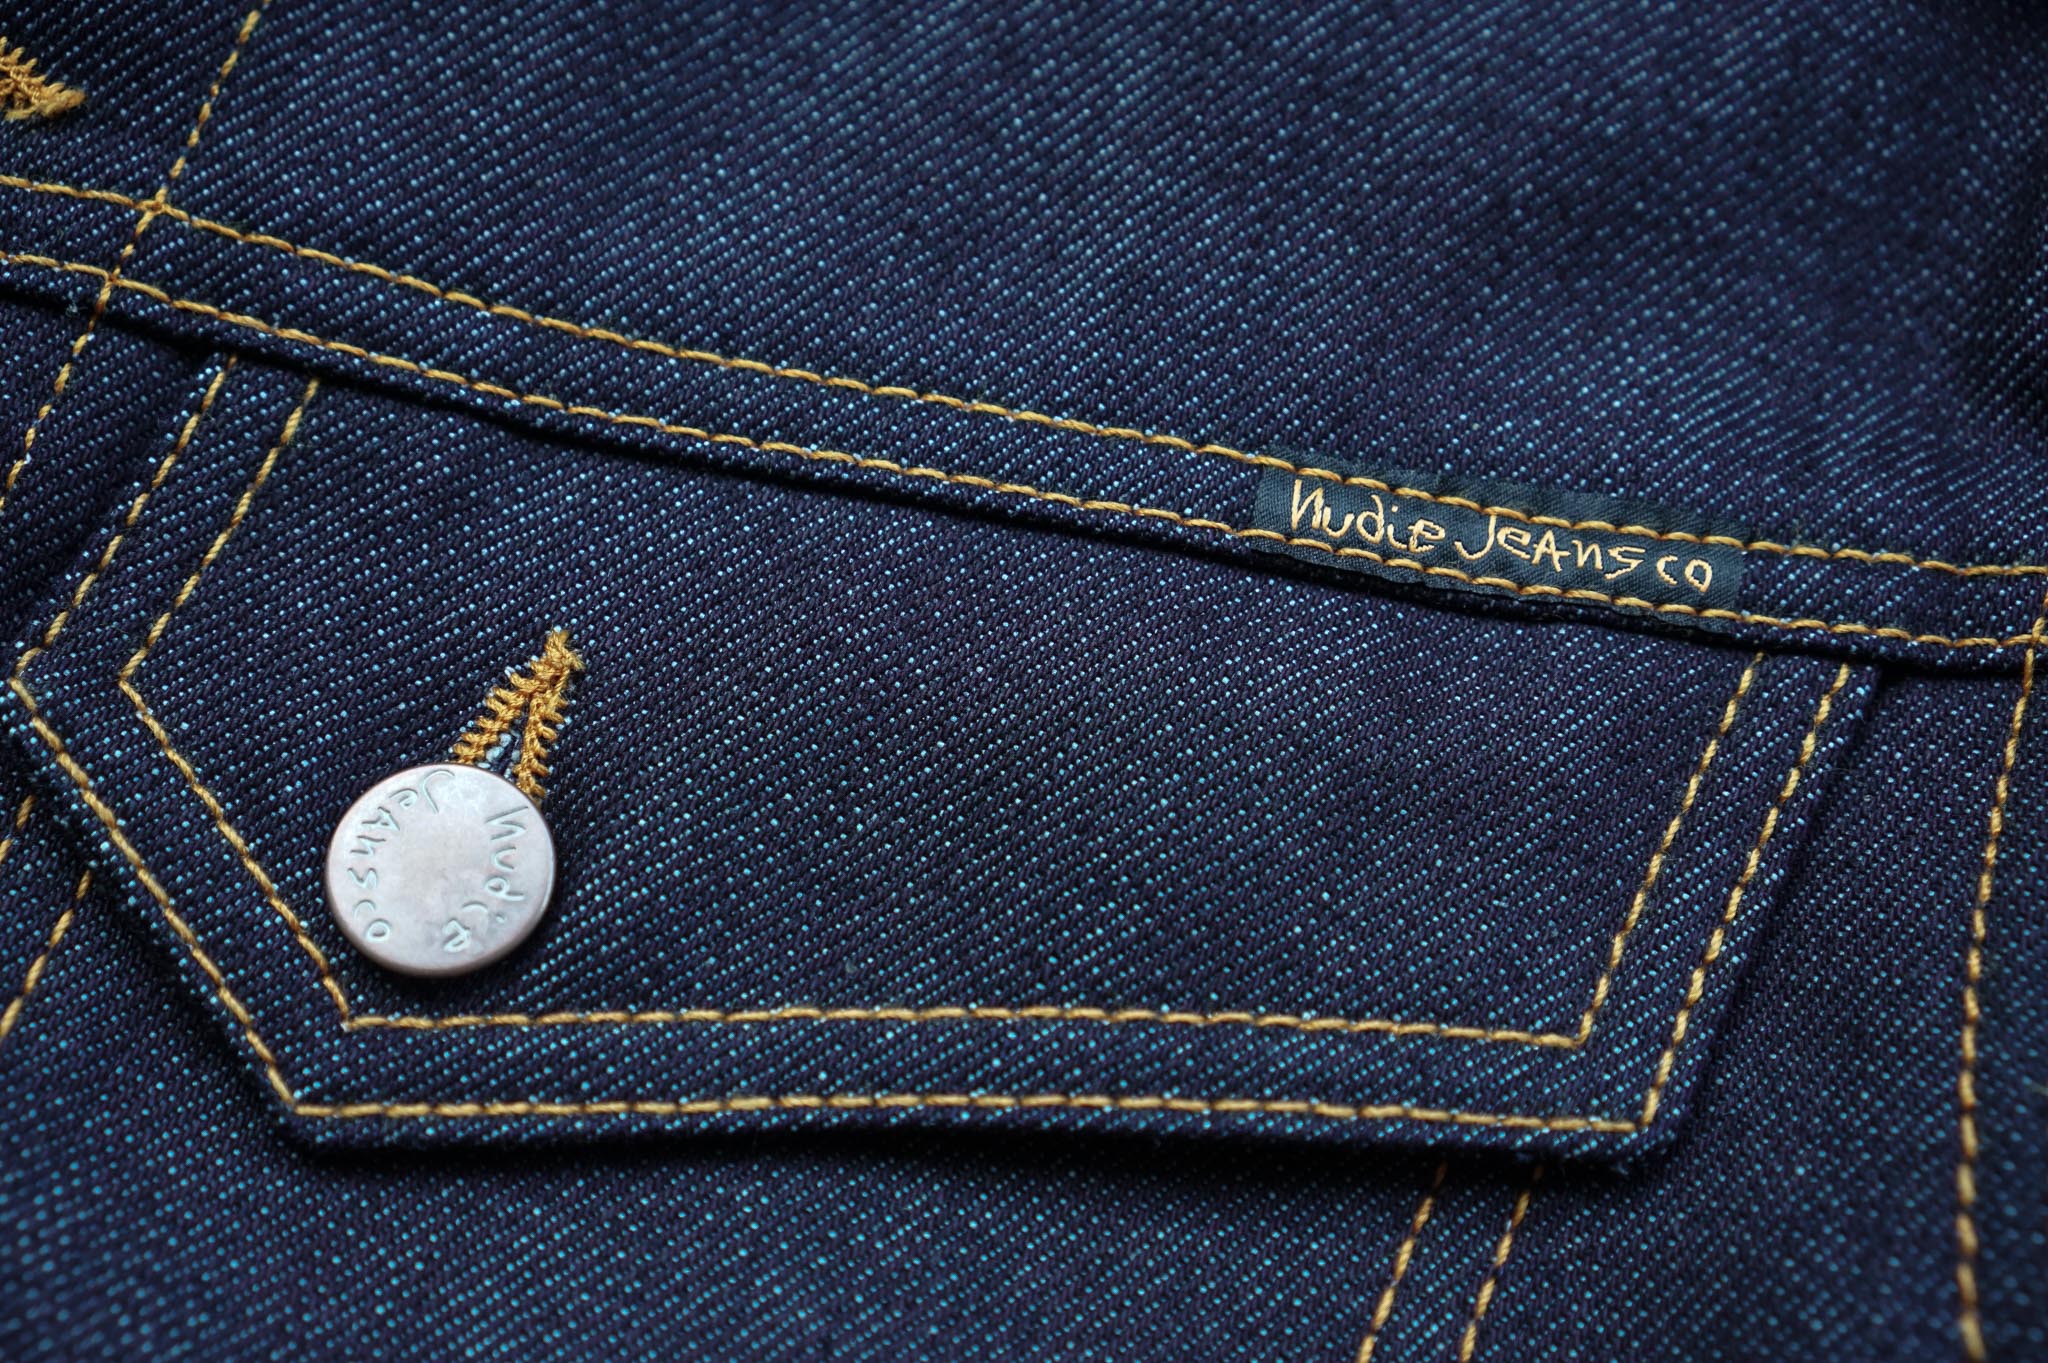 nudie jeans conny dry variant jacket